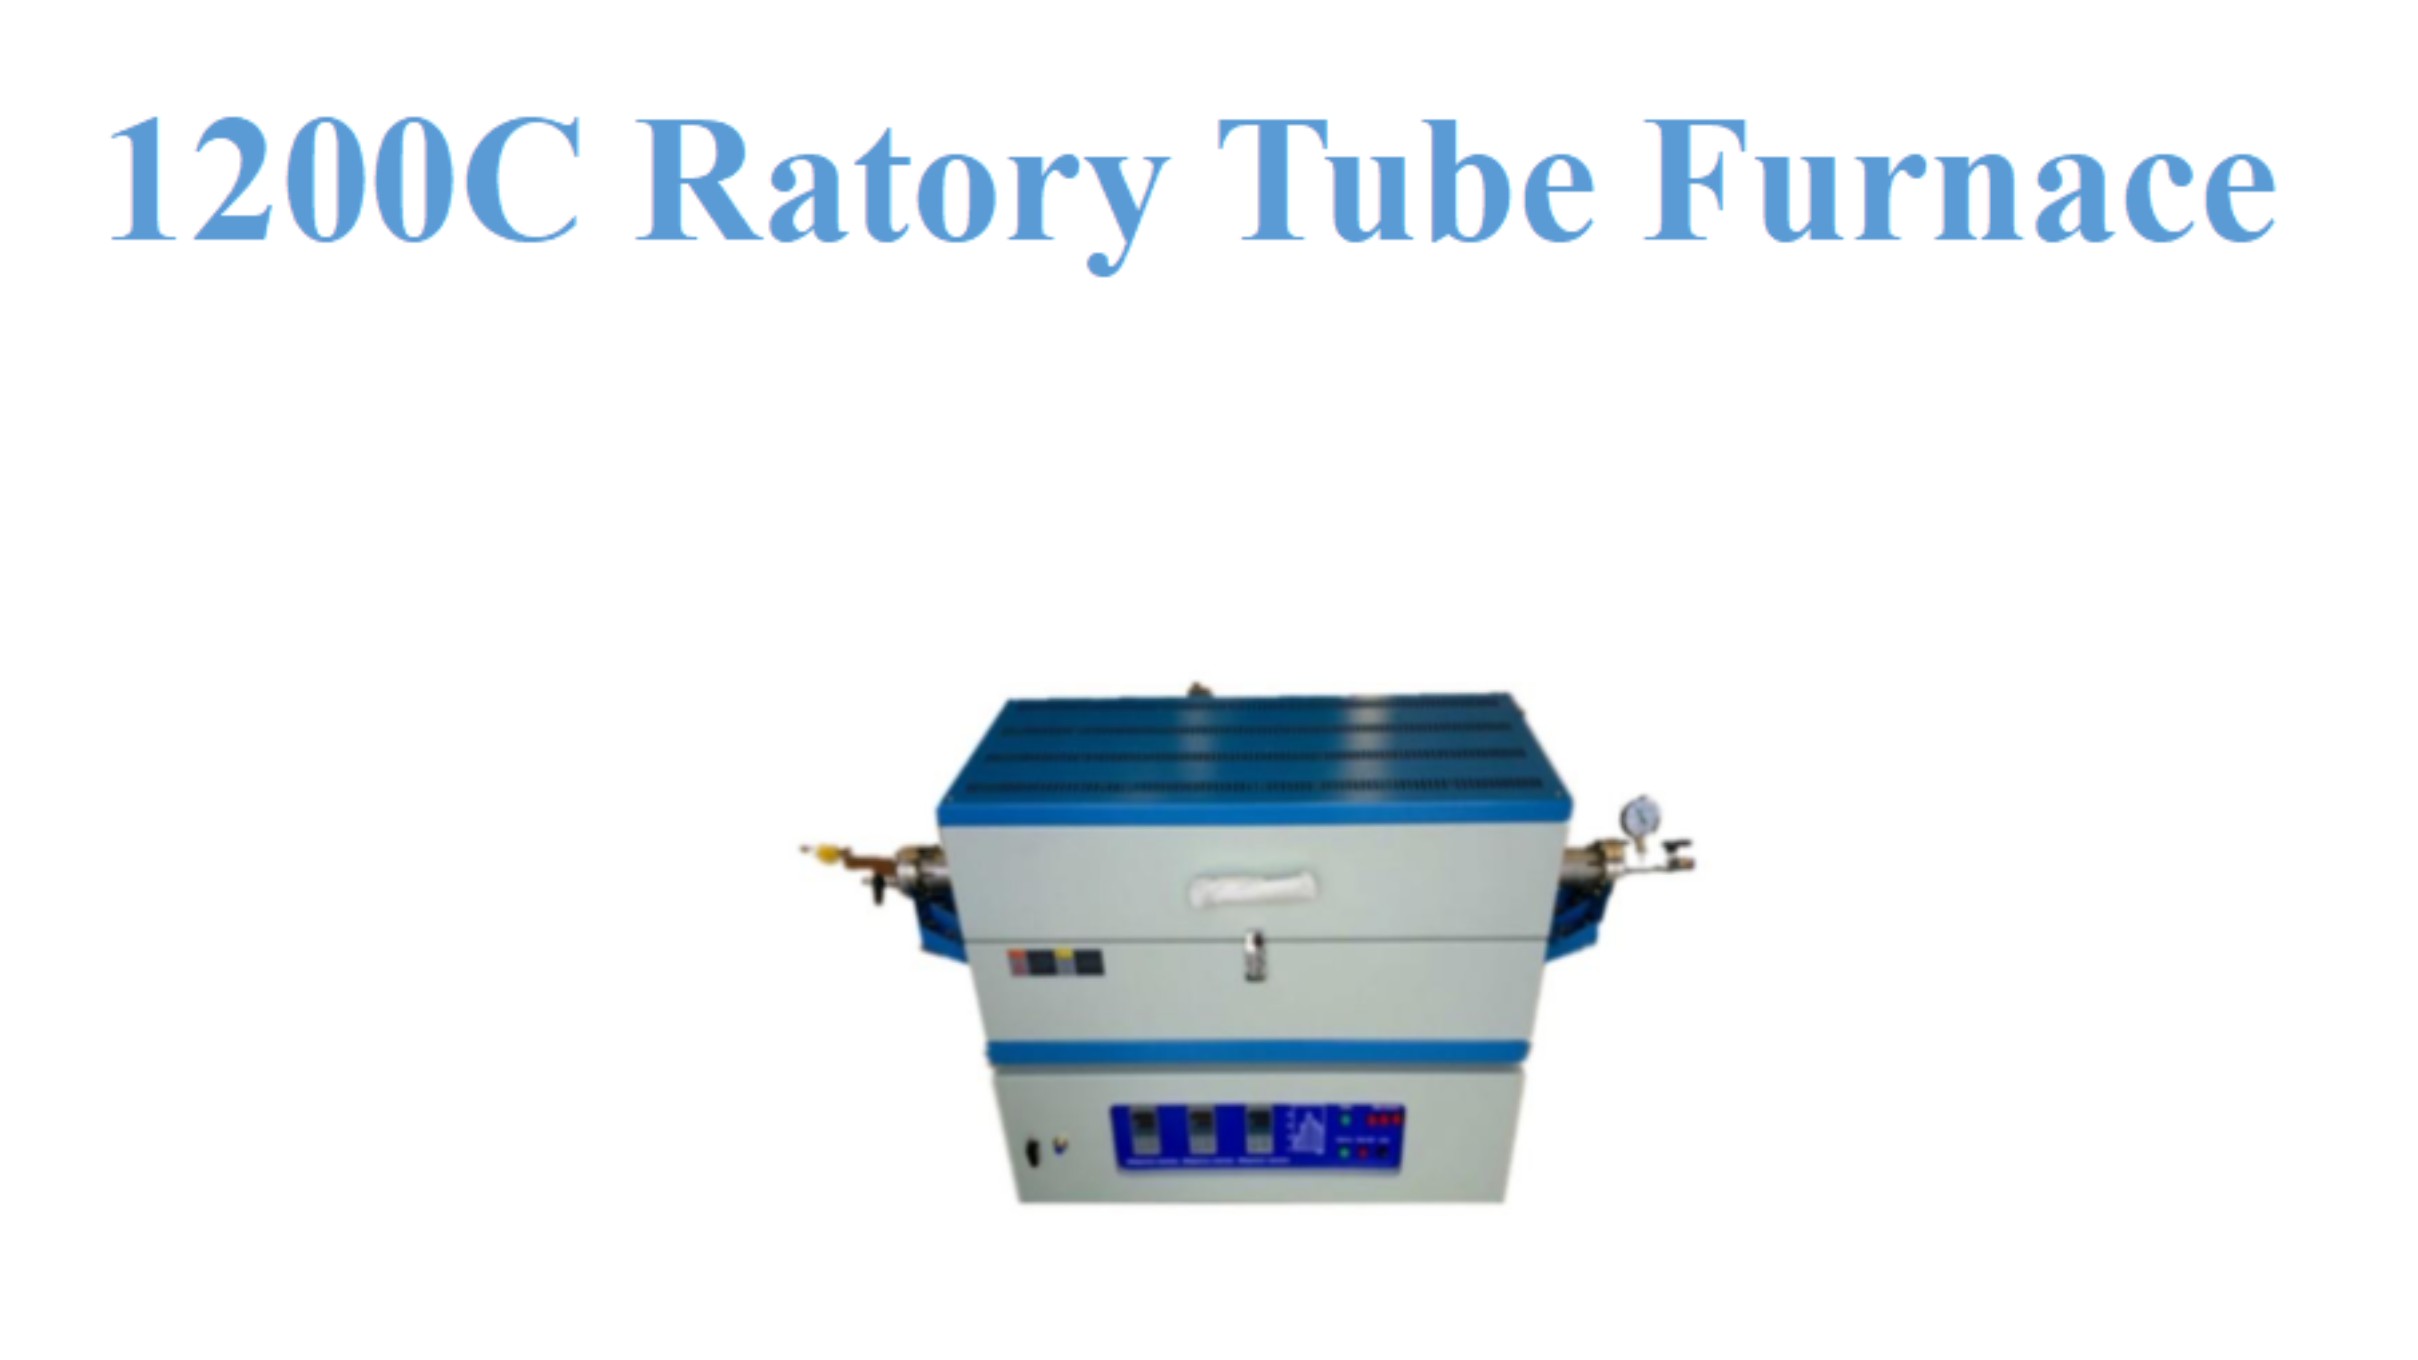 Four à tubes Ratory 1200C